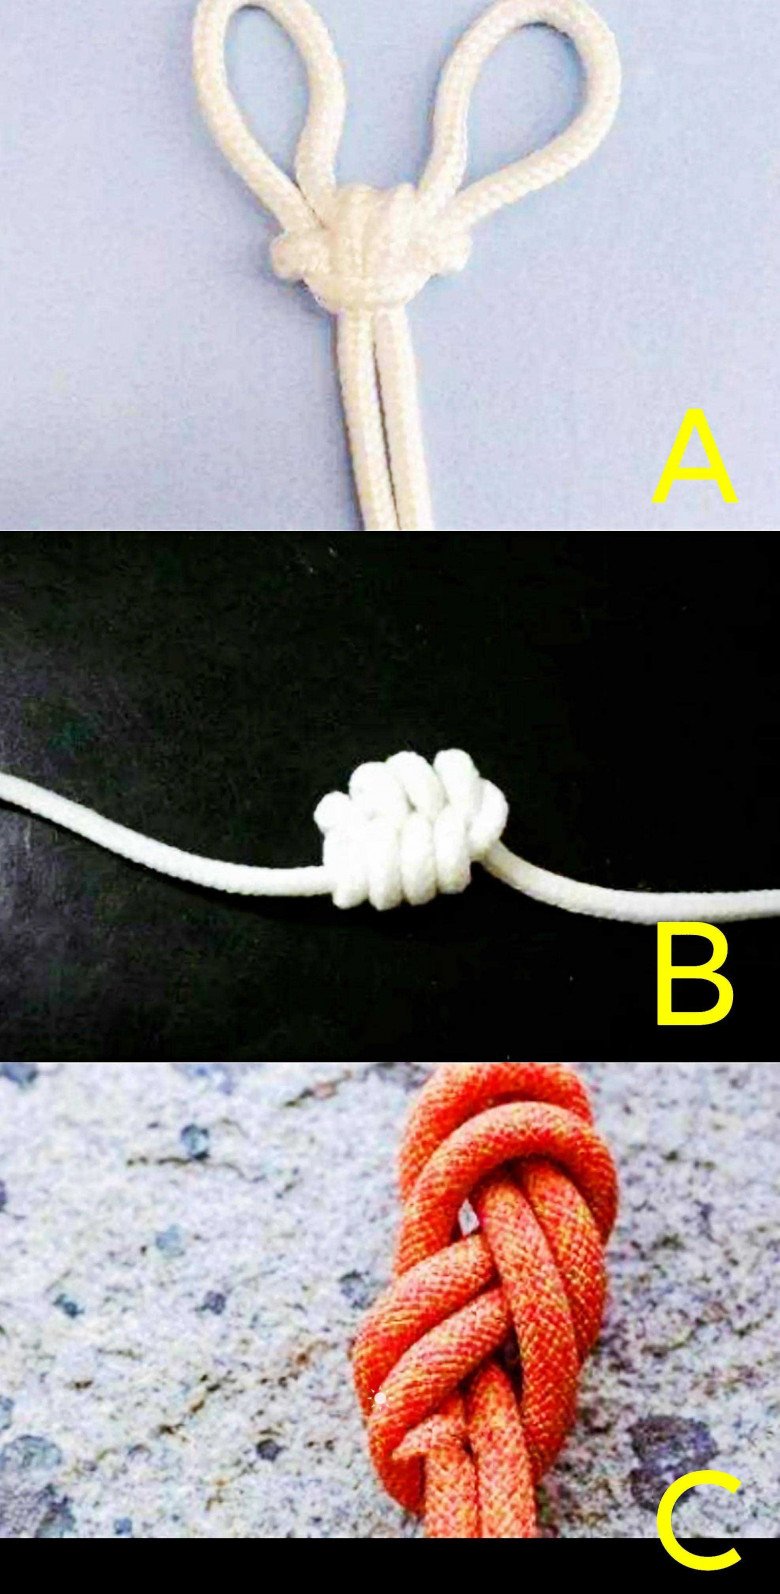 Trắc nghiệm tâm lý: Bạn nghĩ nút thắt nào khó tháo nhất? - 1